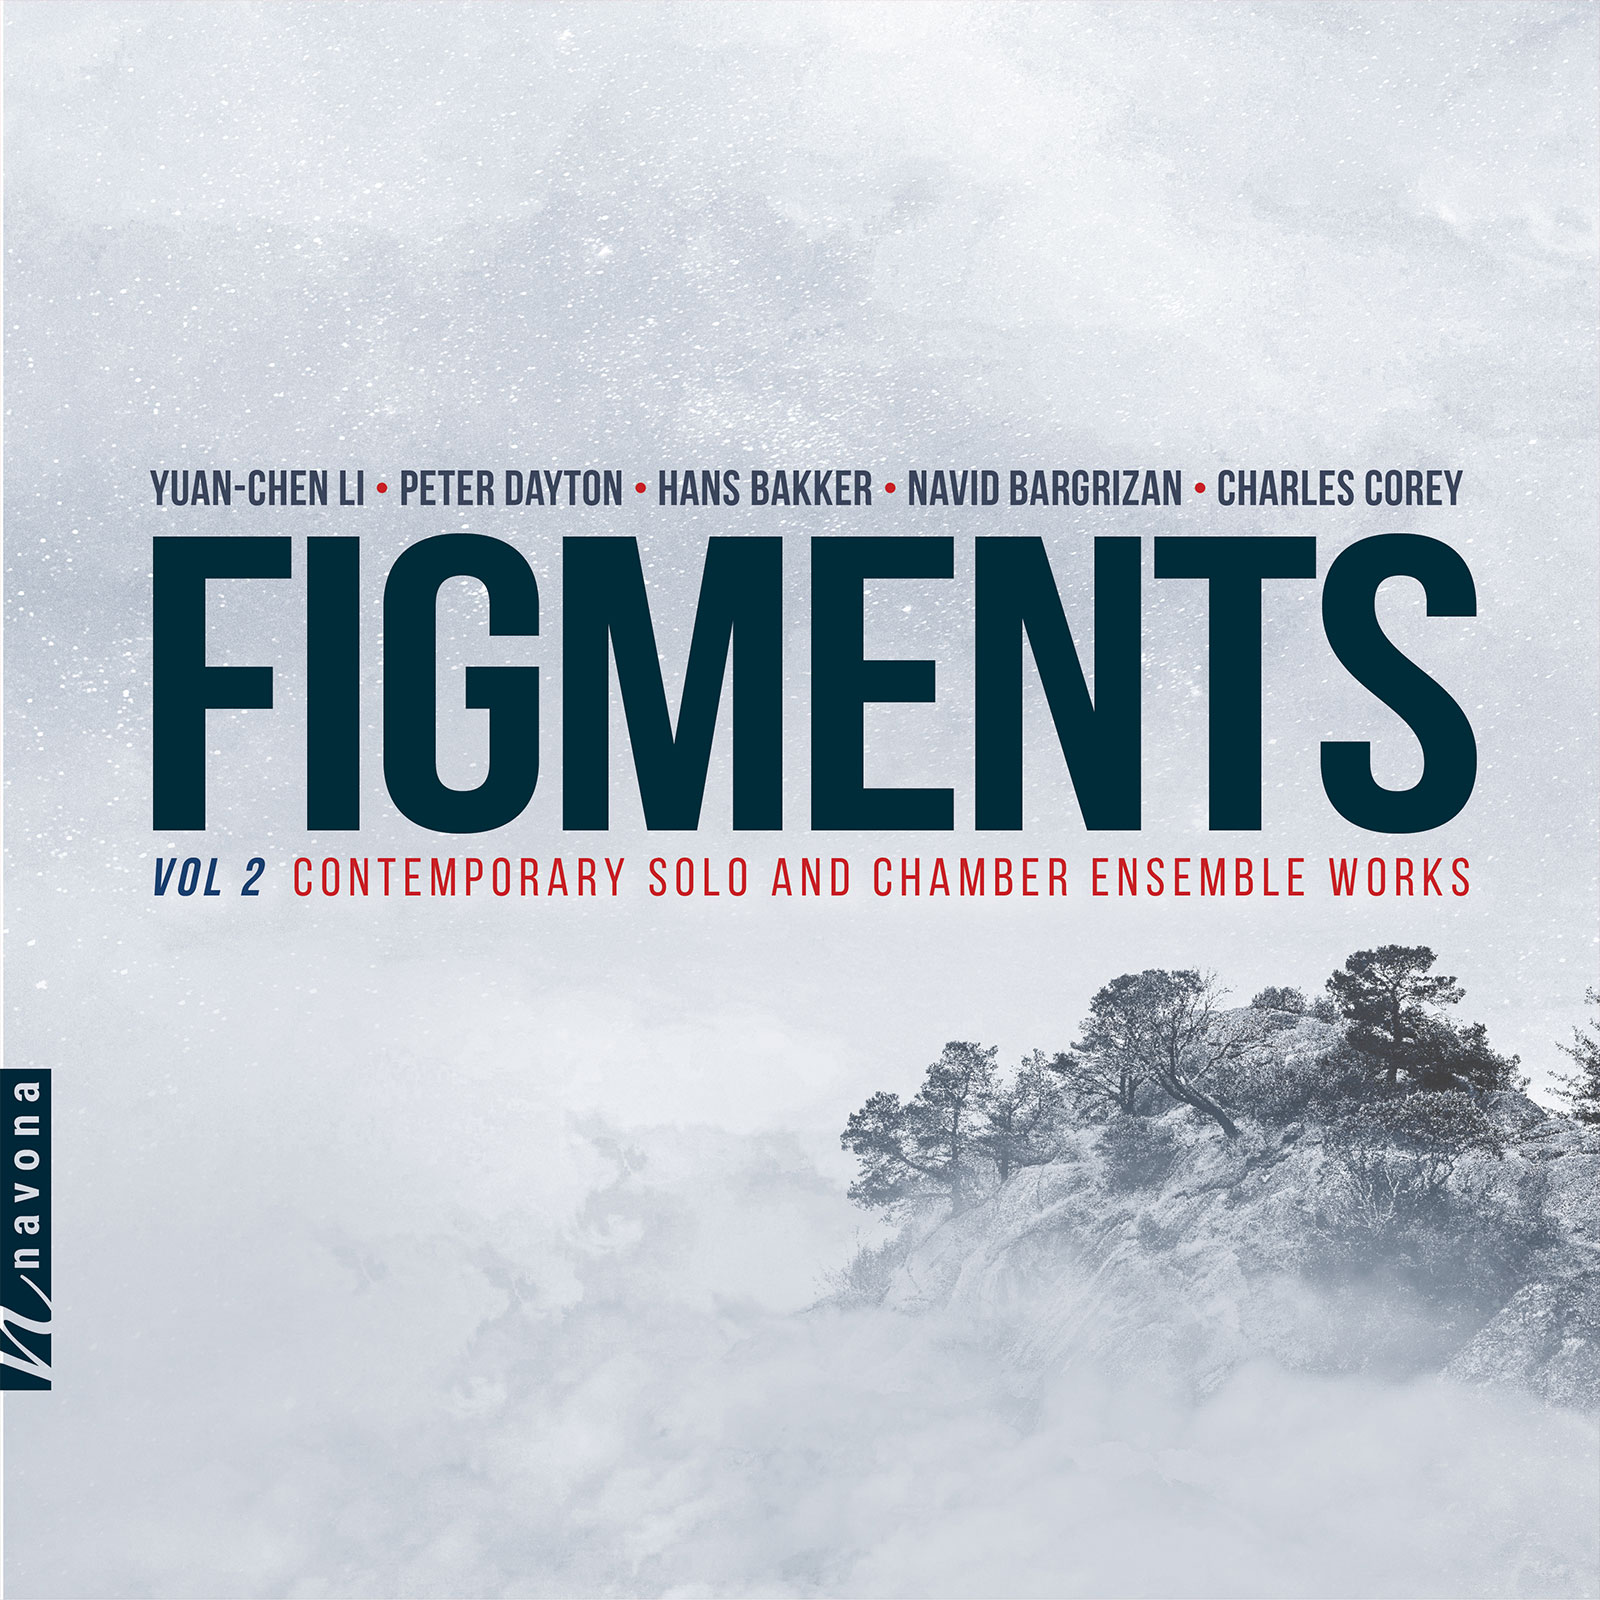 Figments Vol. 2